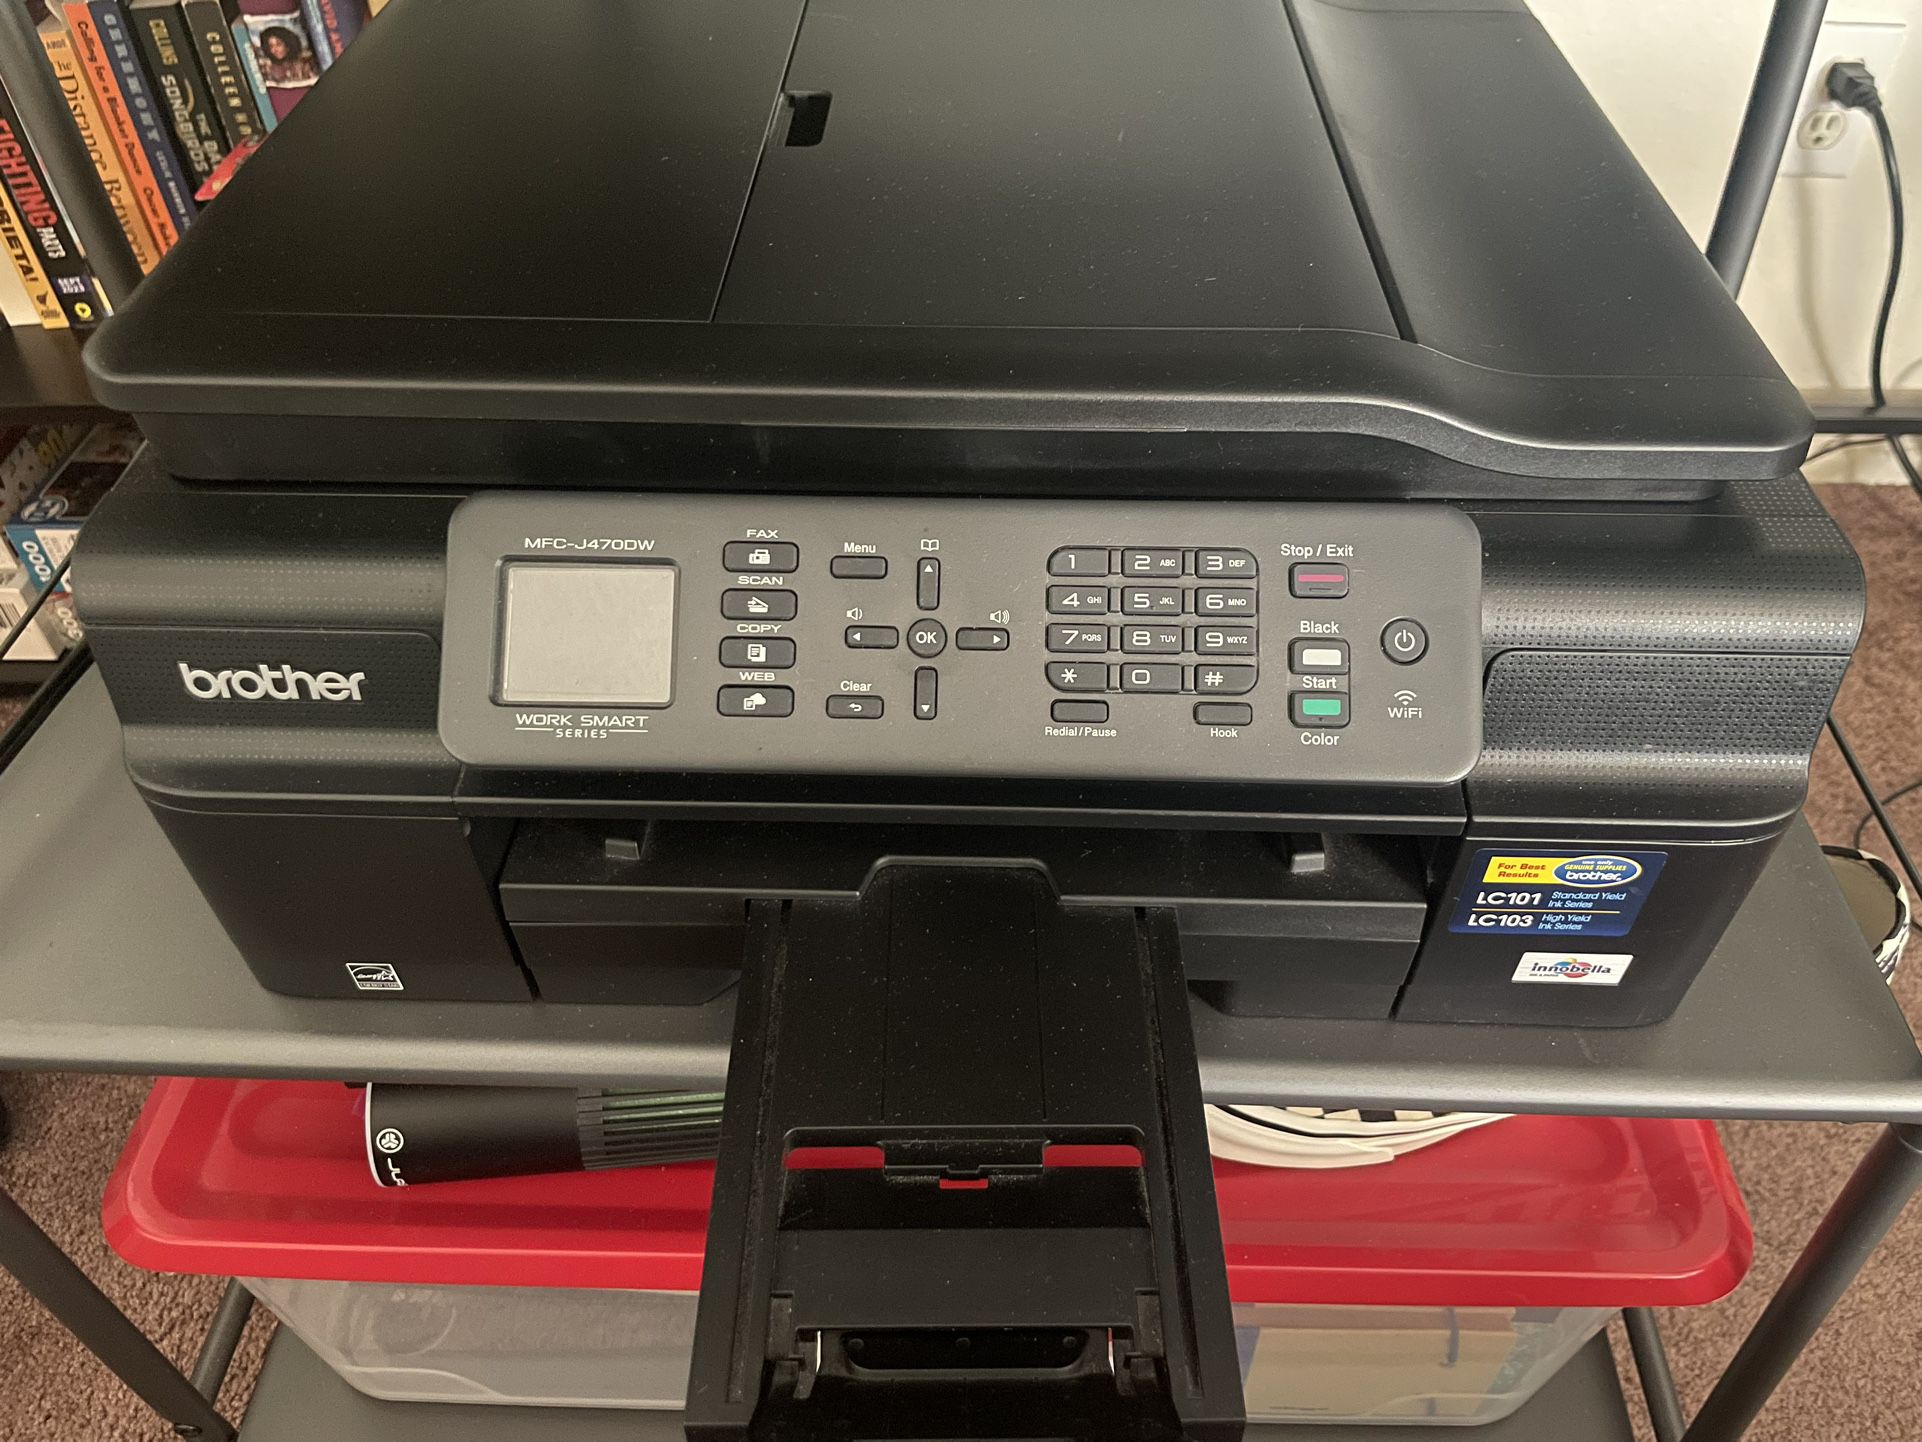 brother MFC-J47ODW printer/scanner/fax